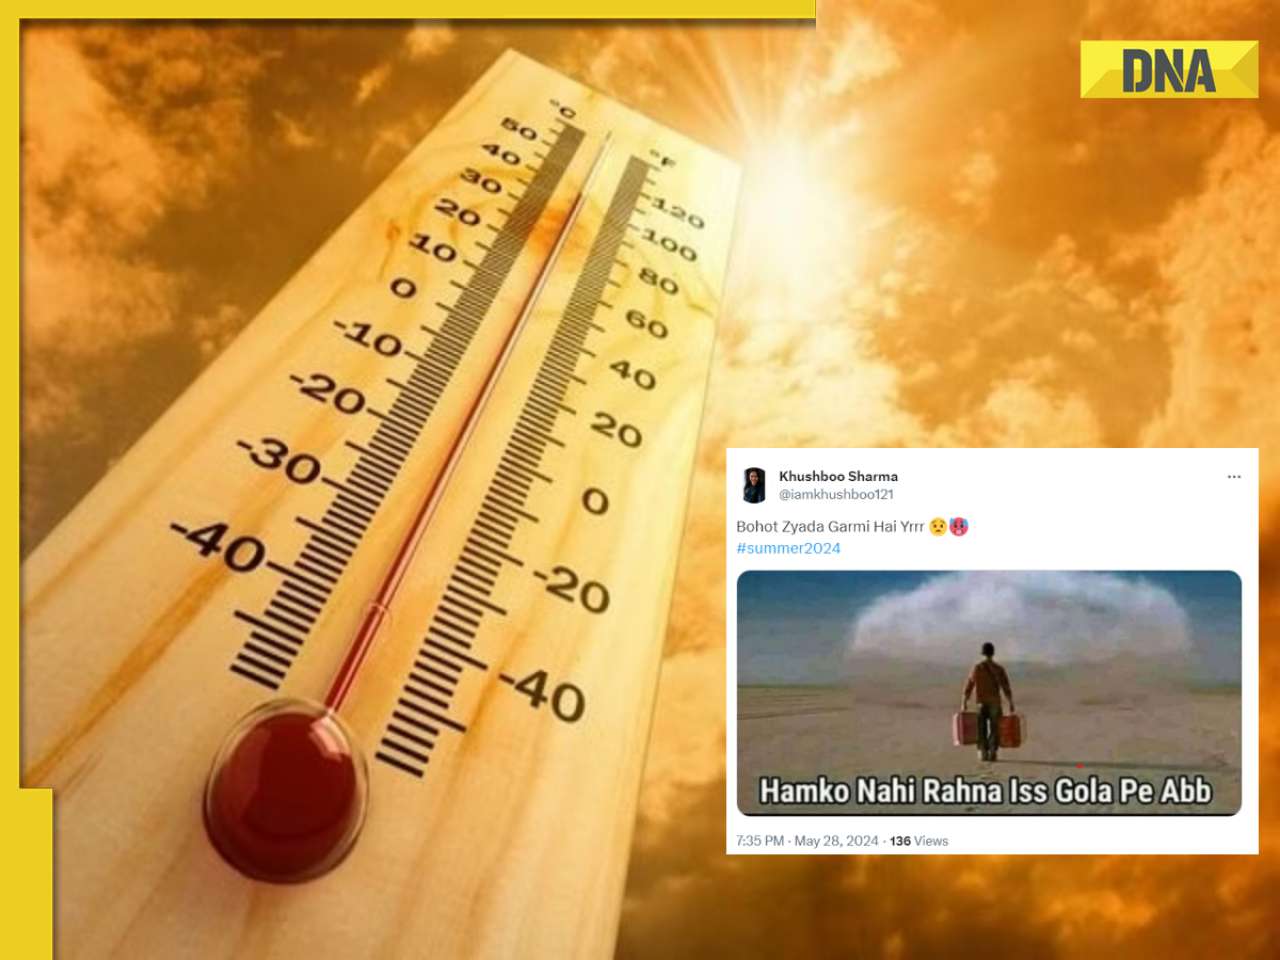 'Humko nahi rahna is gola pe': Heatwave triggers meme fest on social media